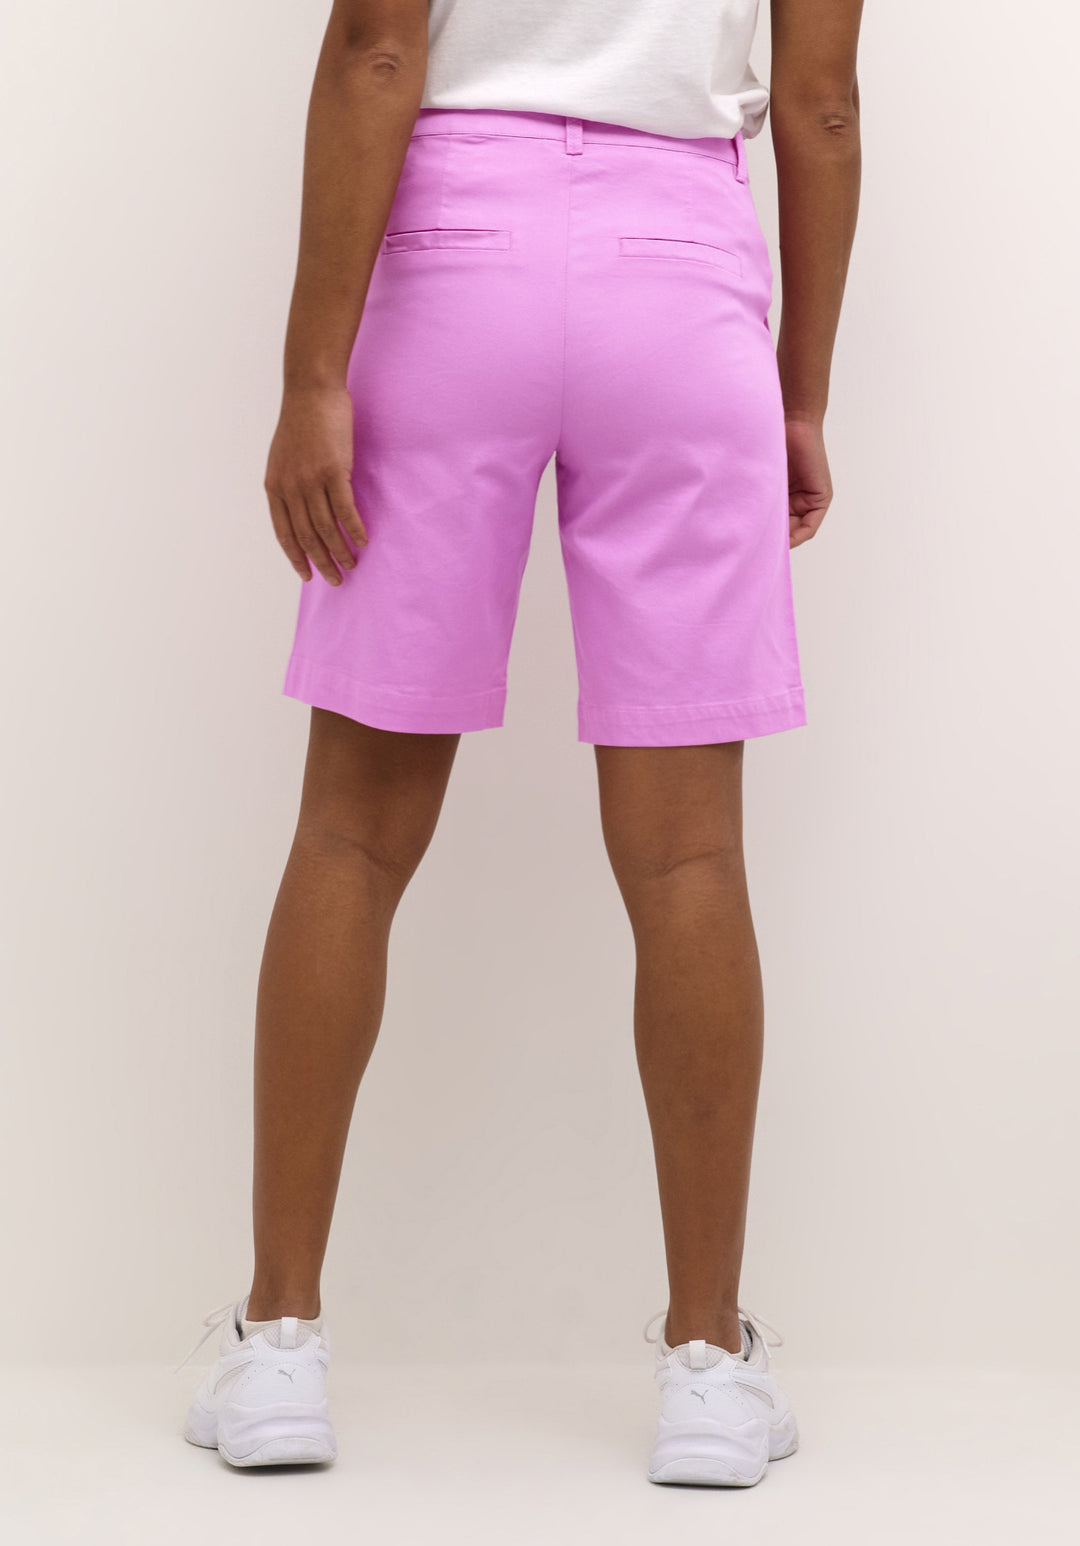 KaLea Cyclamen Purple City Shorts